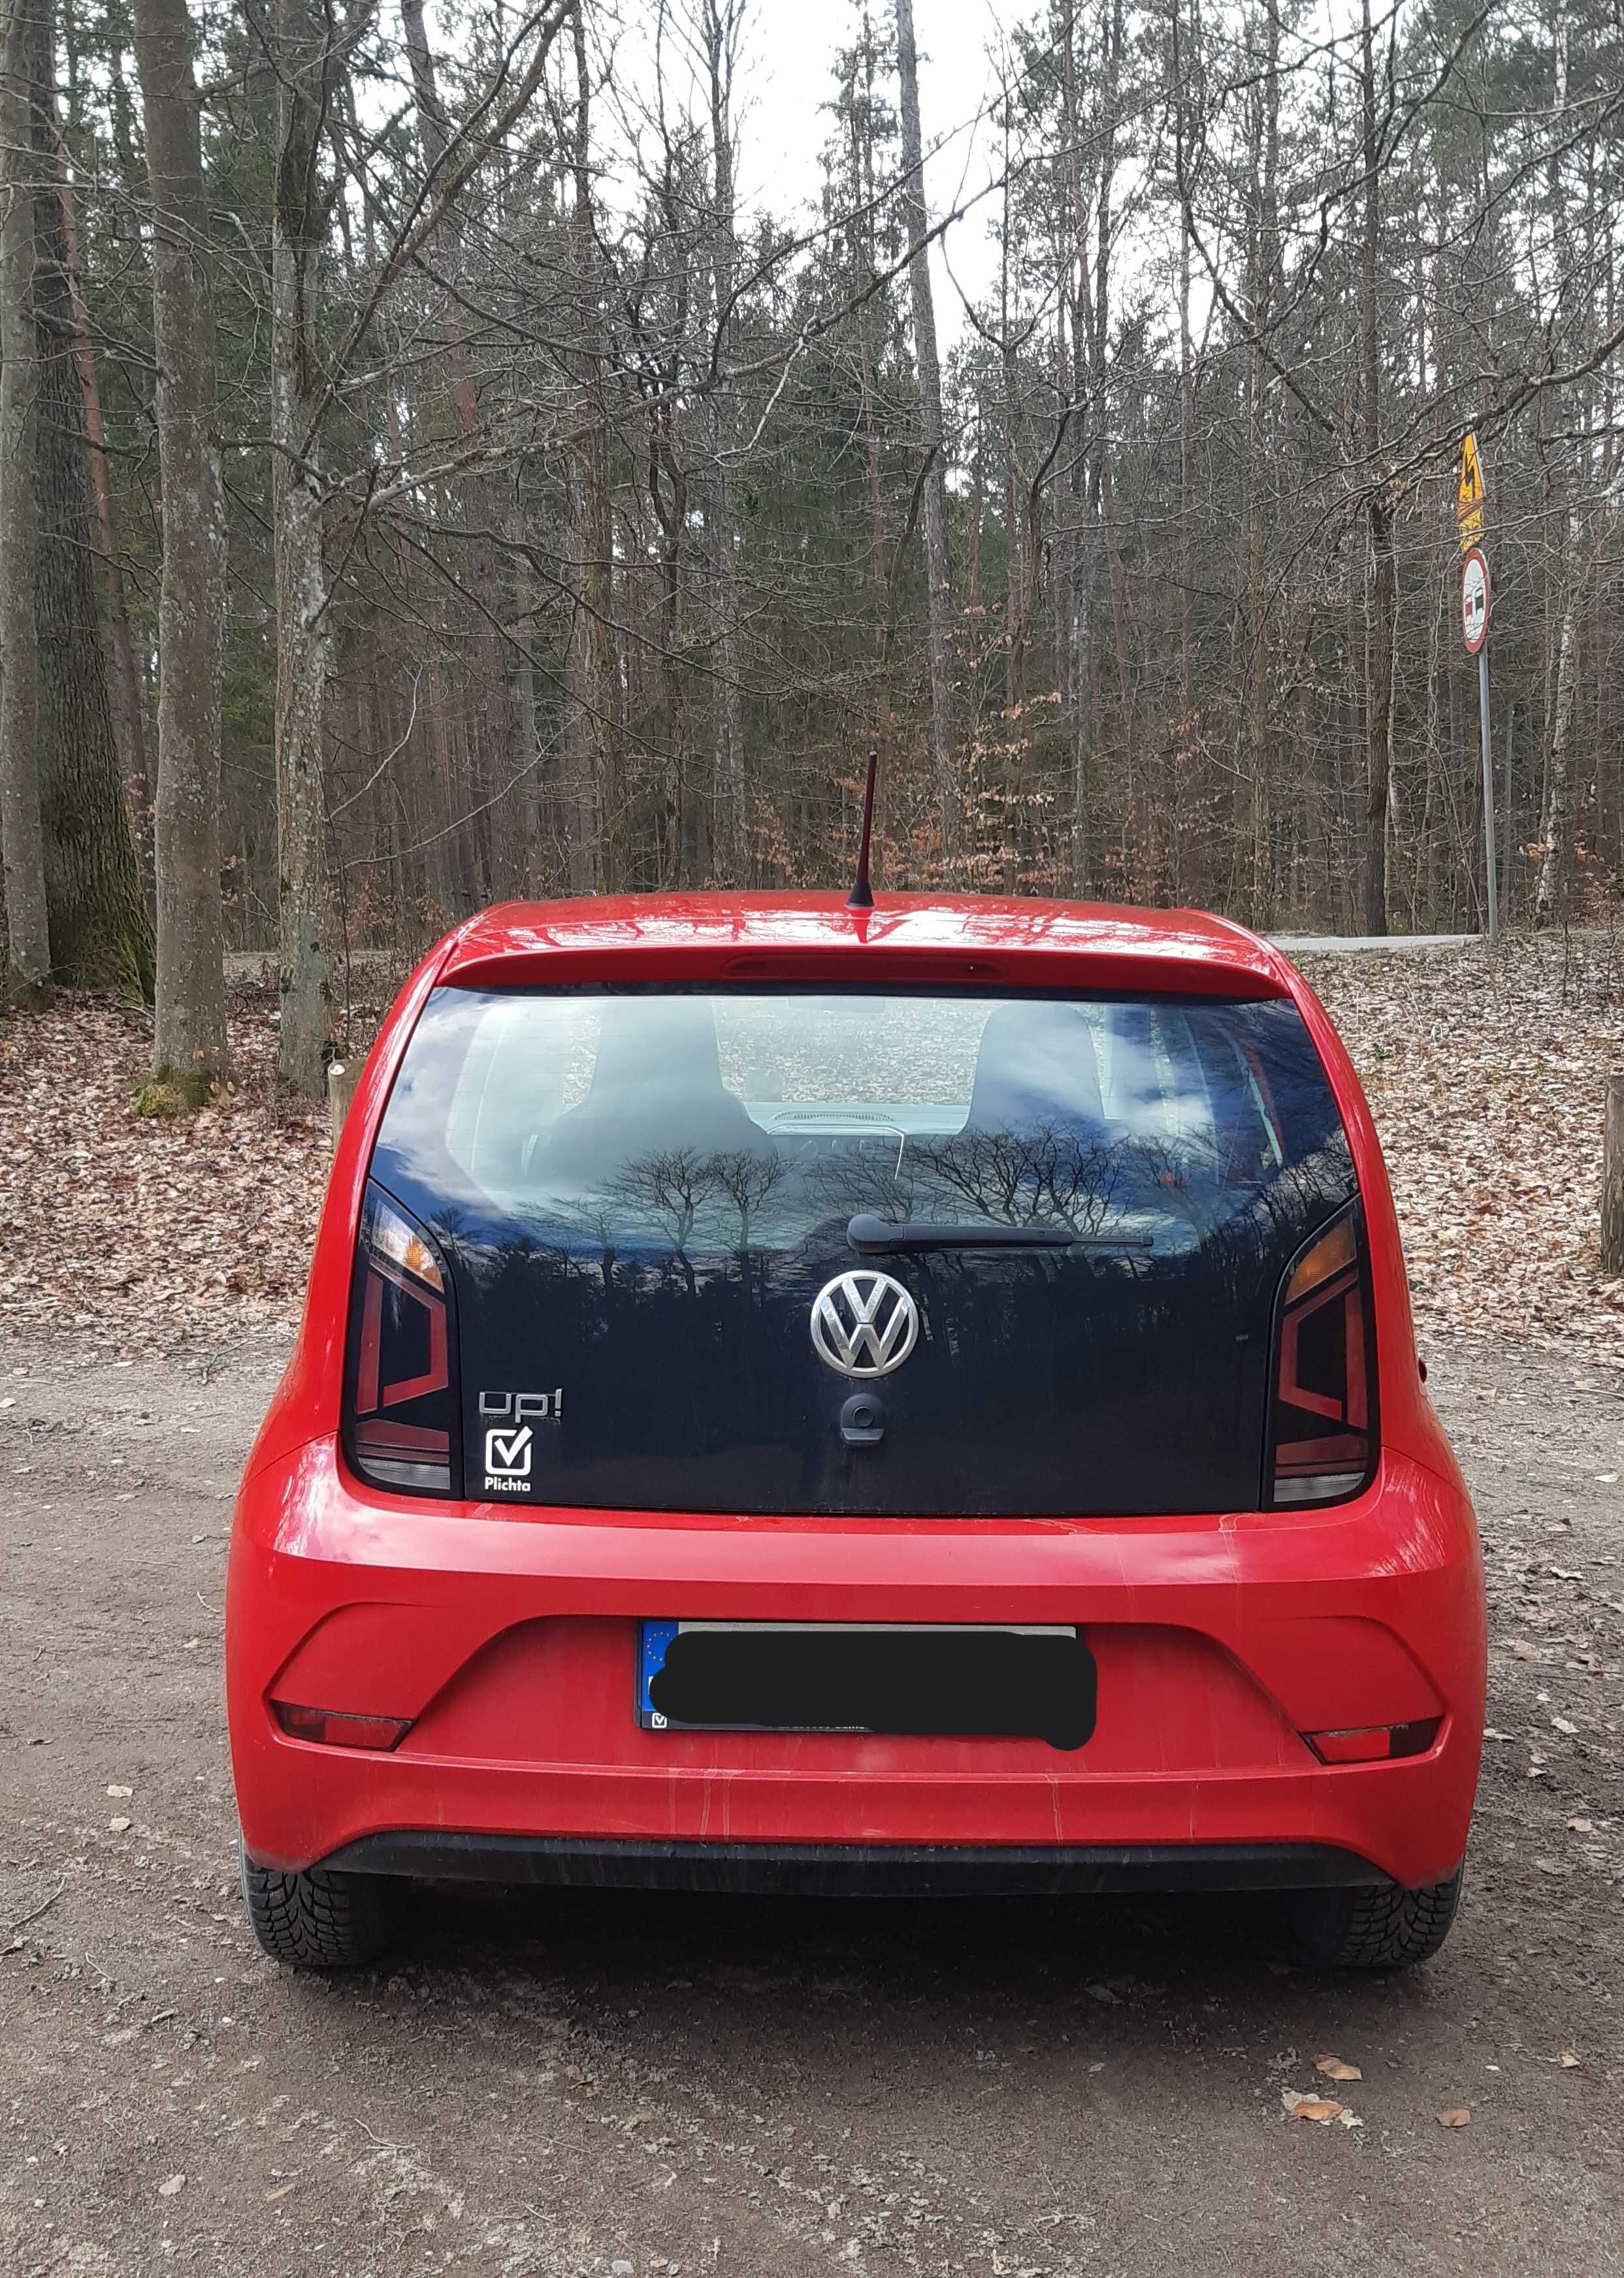 Volkswagen Up! 2017r. 4-drzwiowy, 1.0 MPI, 61 tys km - stan idealny!